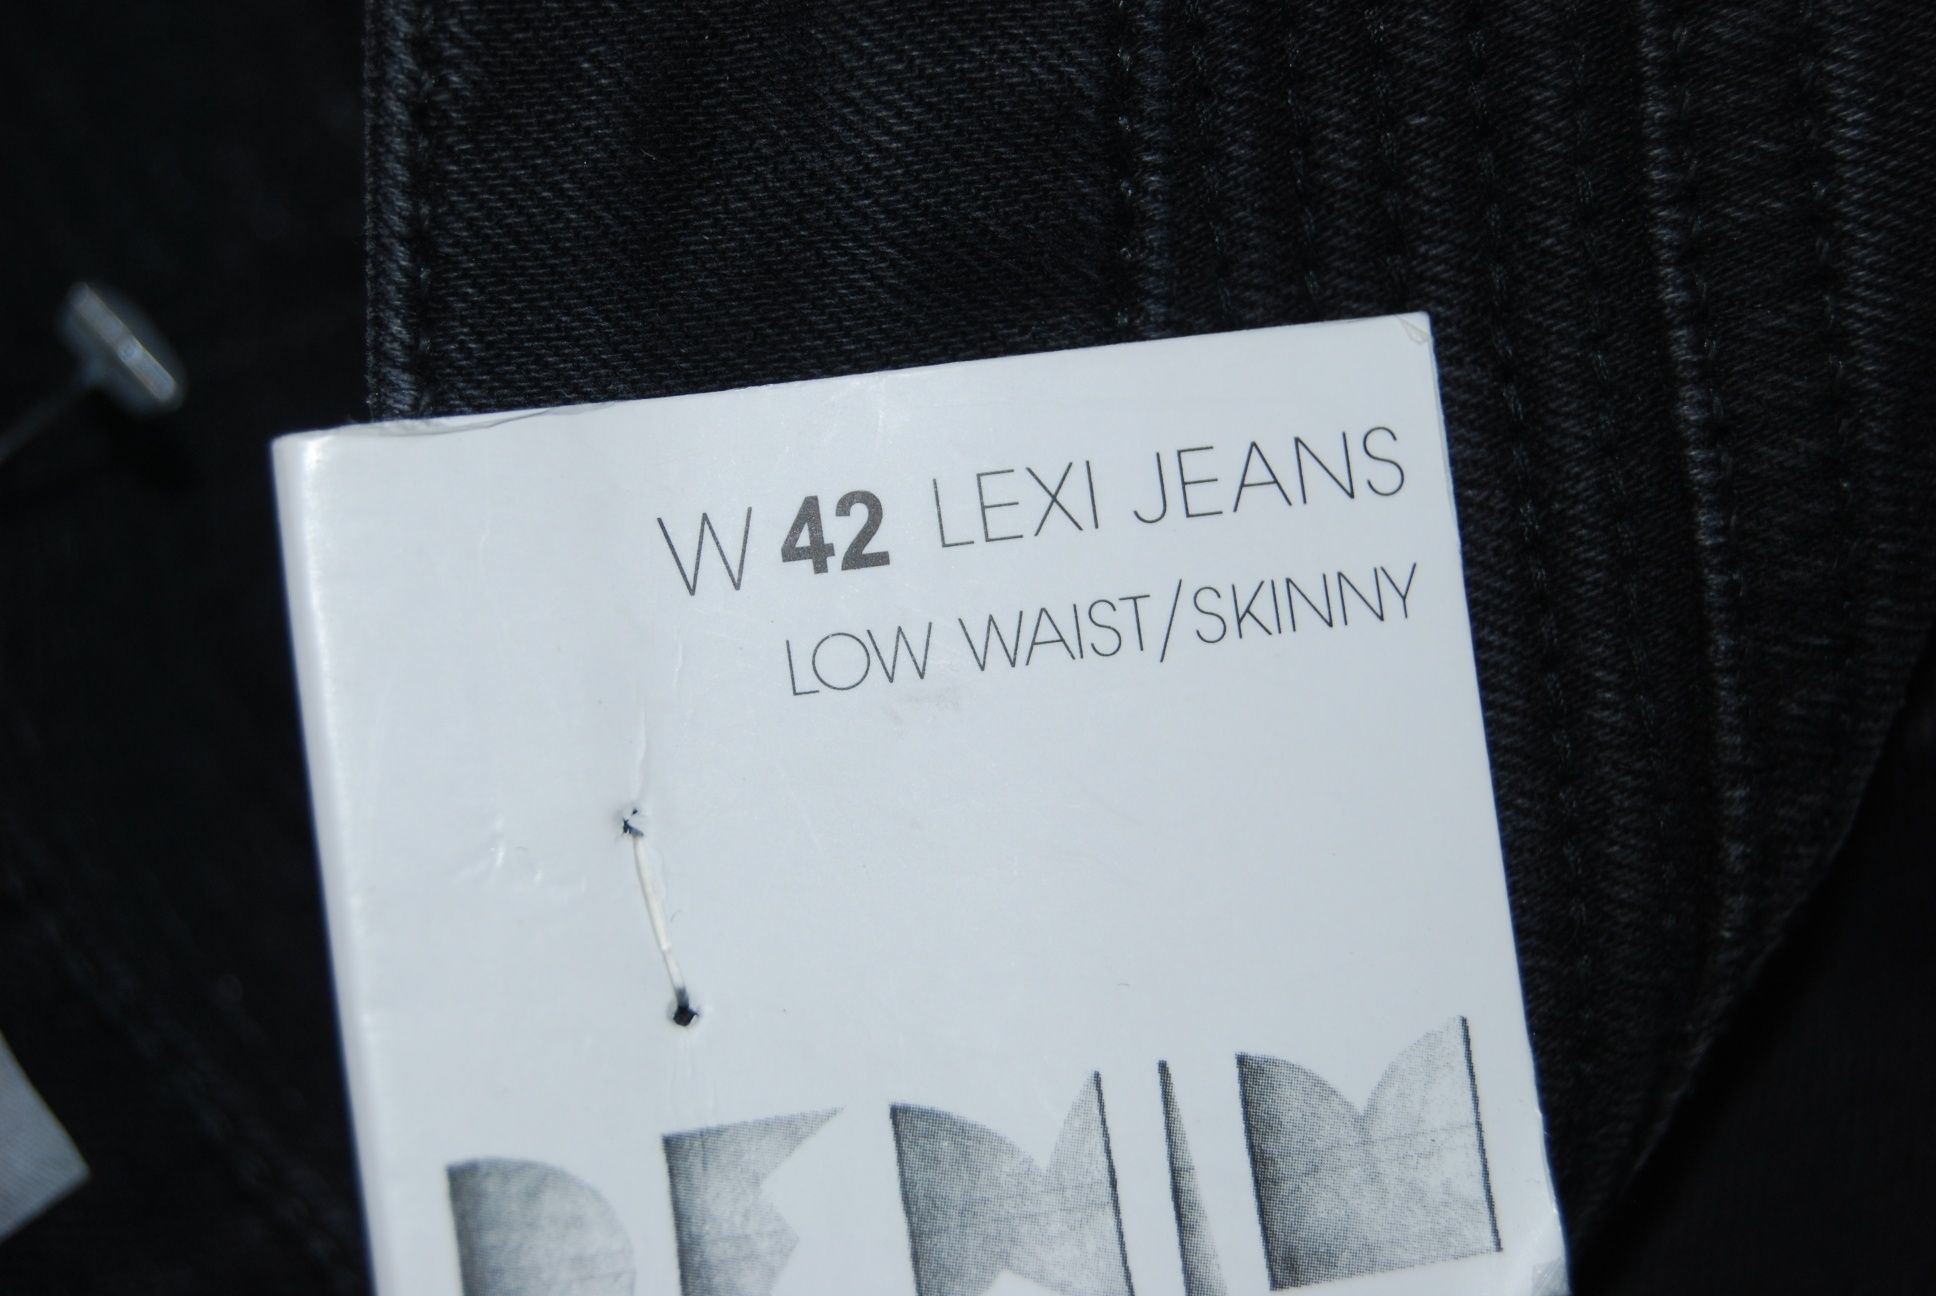 Damskie spodnie dżinsowe CUBUS m. Lexi 42 pas44/dl. 100-101